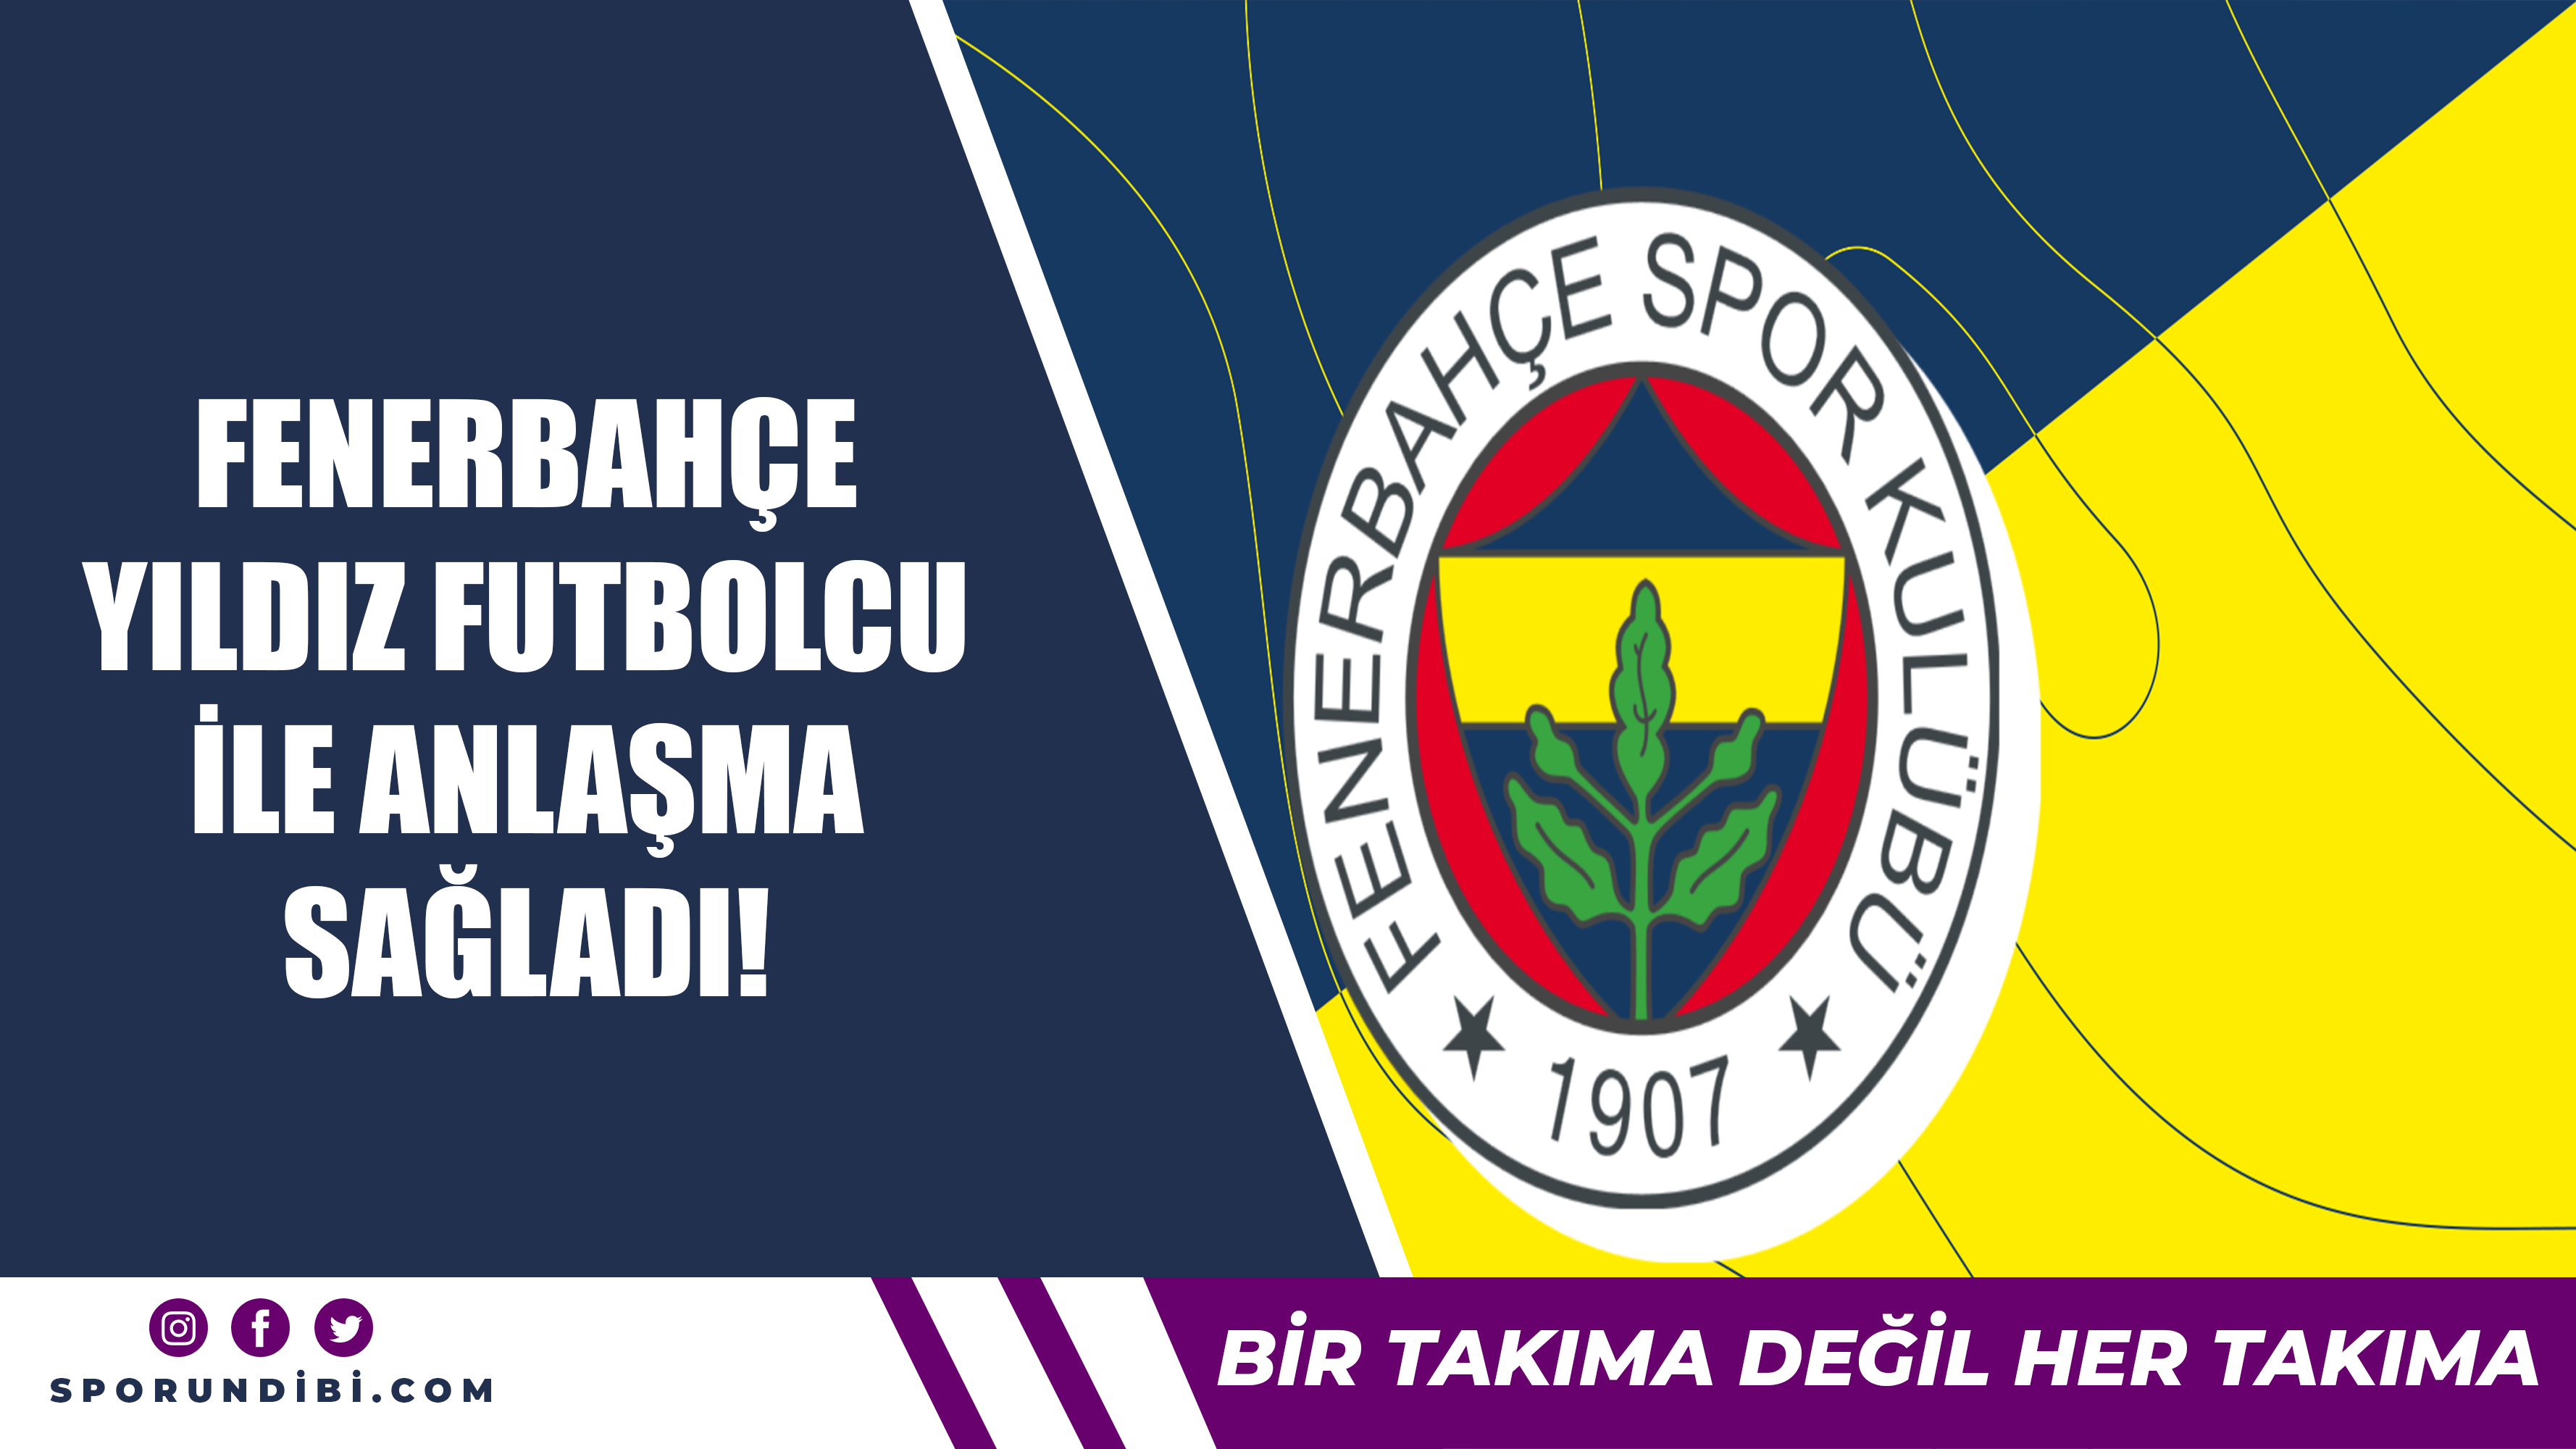 Fenerbahçe yıldız futbolcu ile anlaşma sağladı!